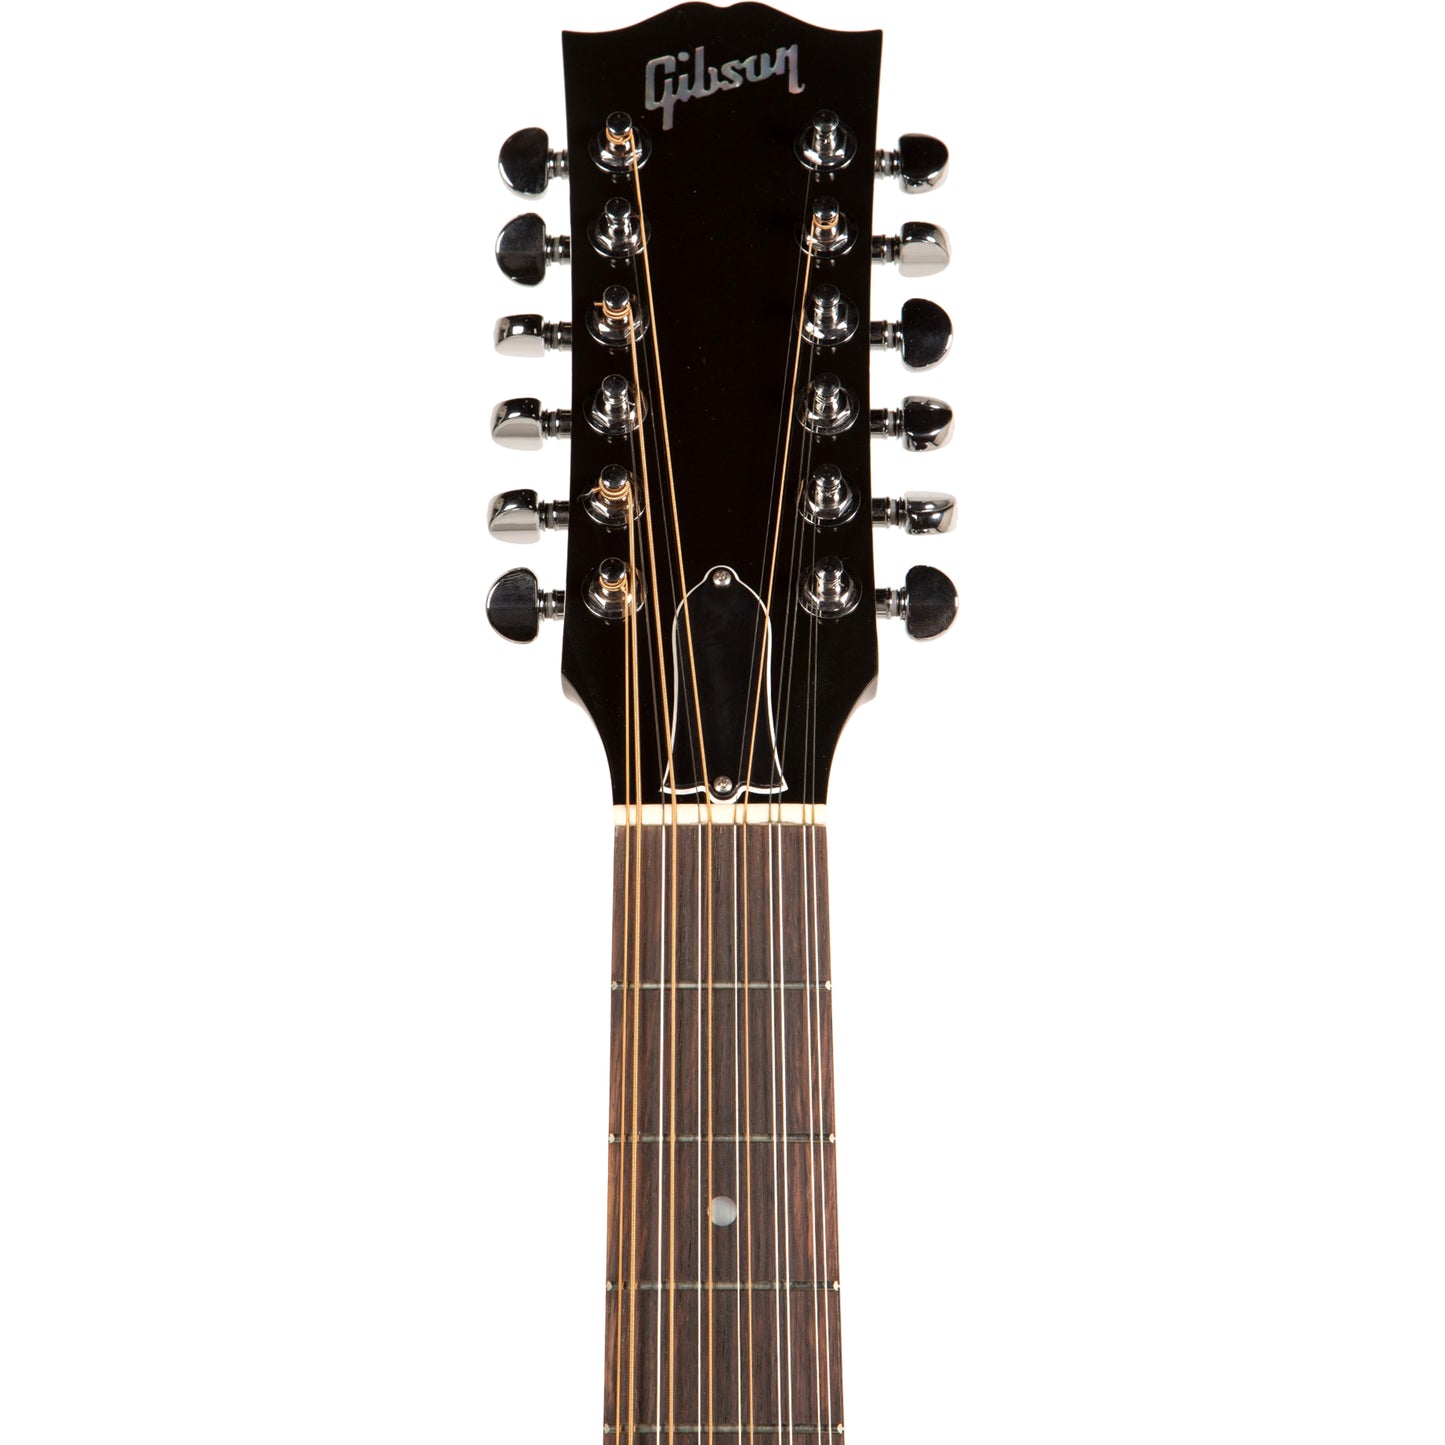 Gibson J-45 Standard 12 String Acoustic Guitar - Vintage Sunburst